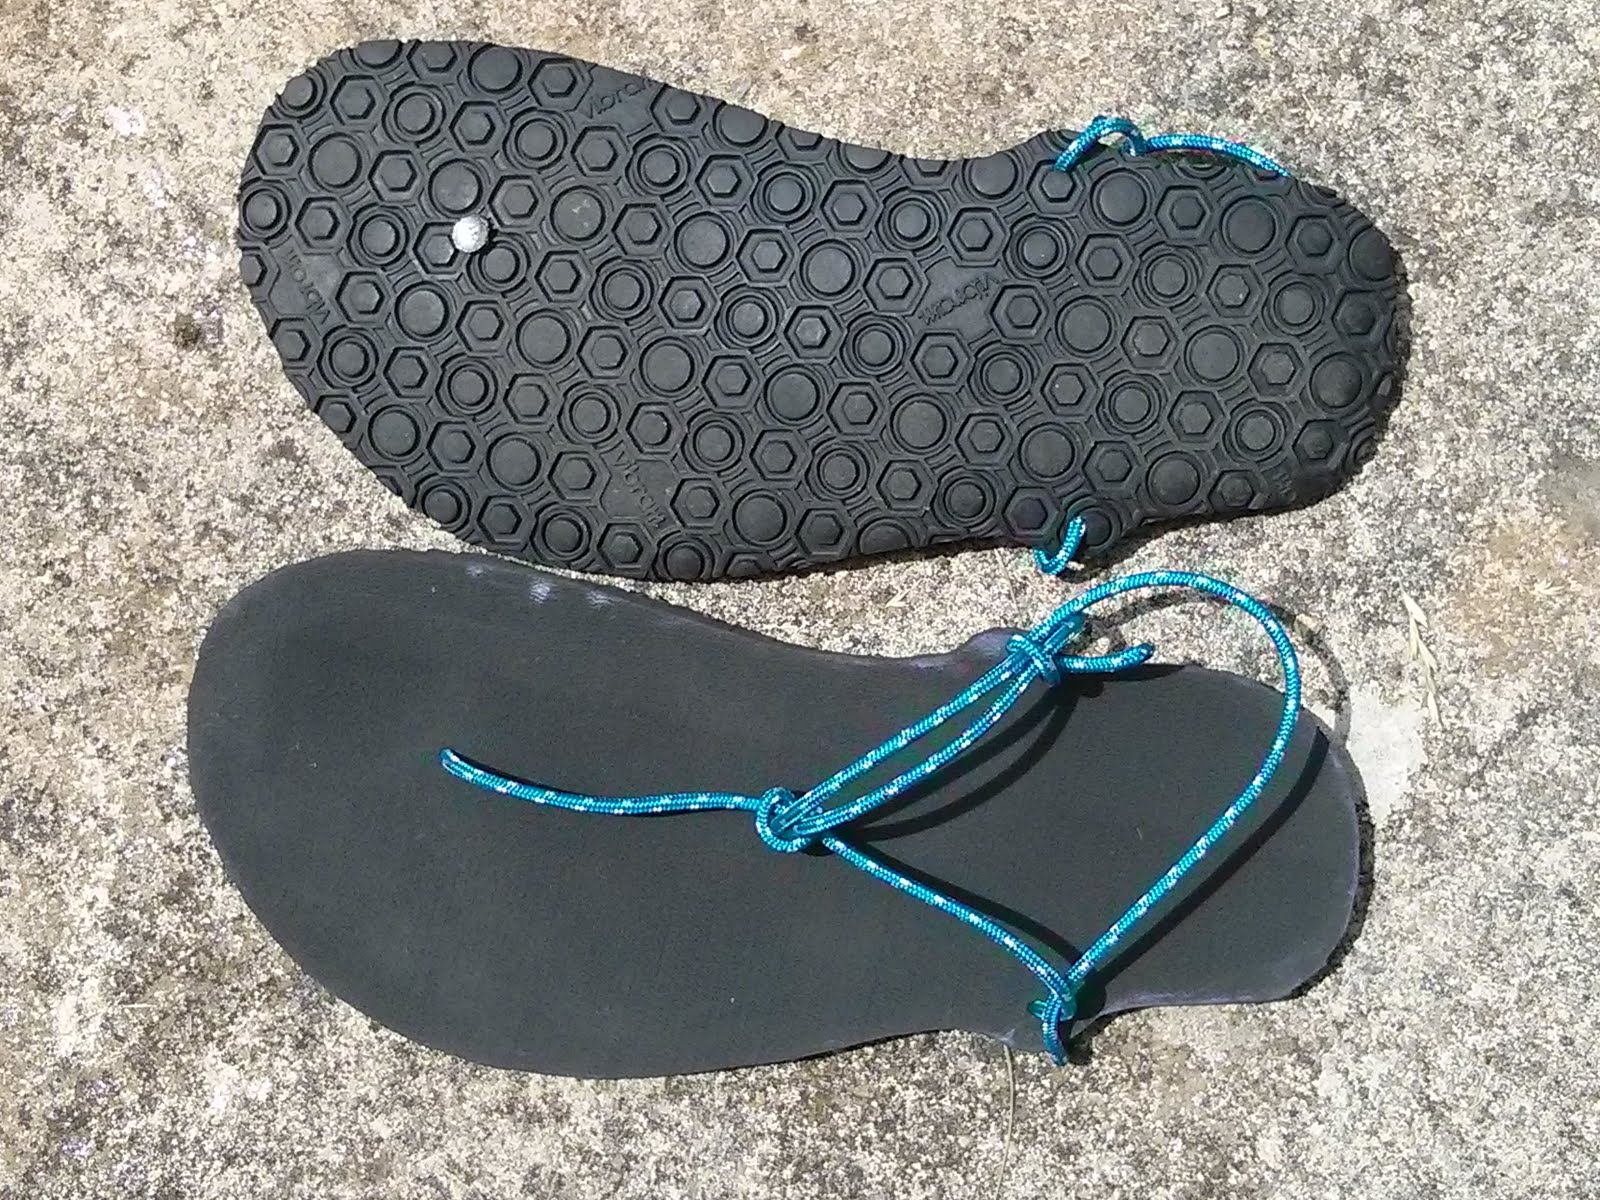 sandales minimalistes